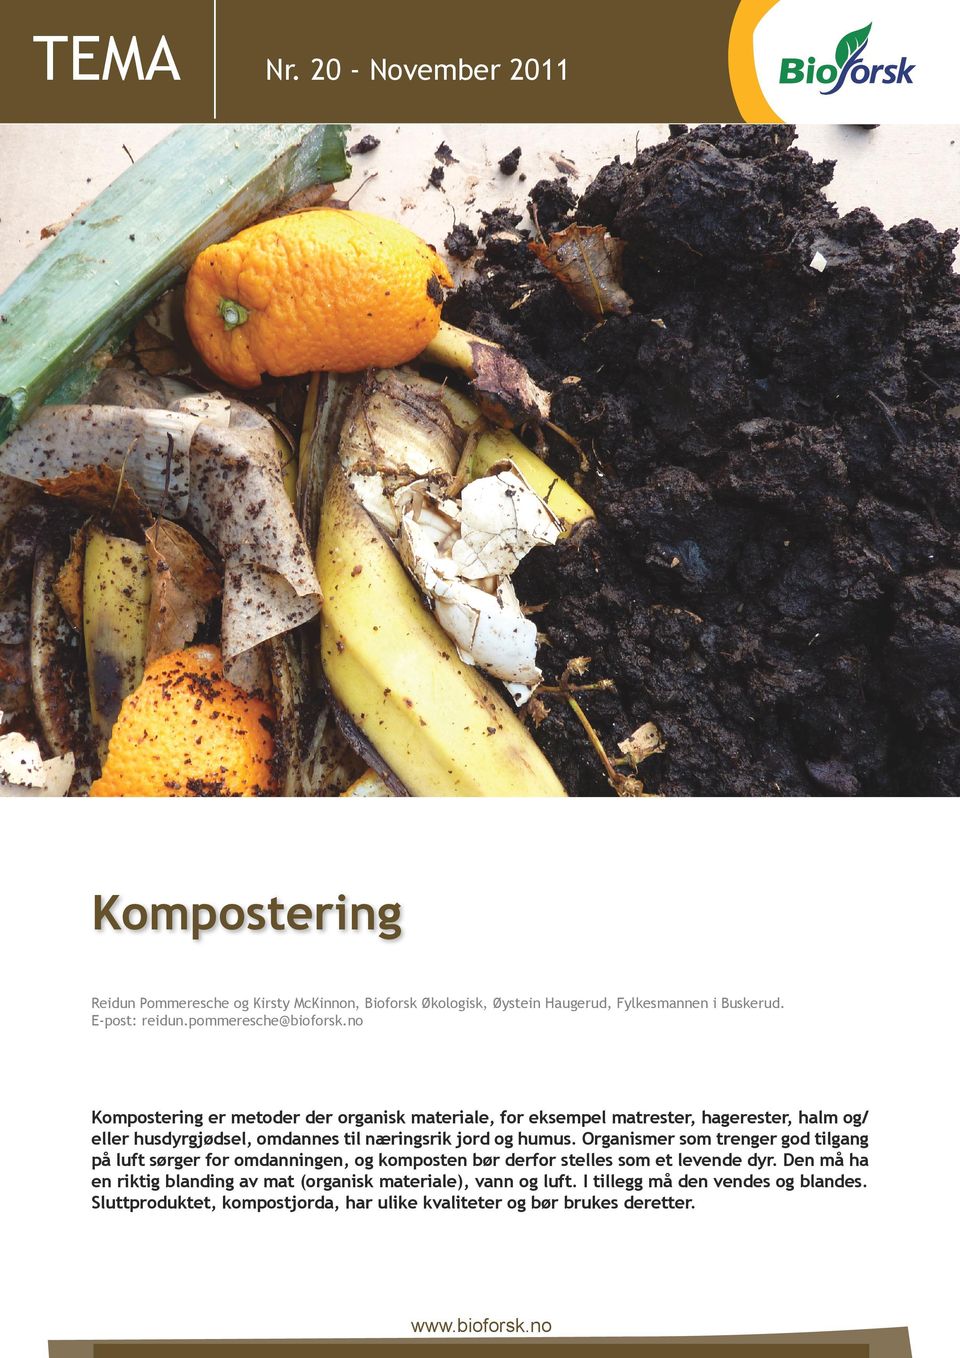 no Kompostering er metoder der organisk materiale, for eksempel matrester, hagerester, halm og/ eller husdyrgjødsel, omdannes til næringsrik jord og humus.